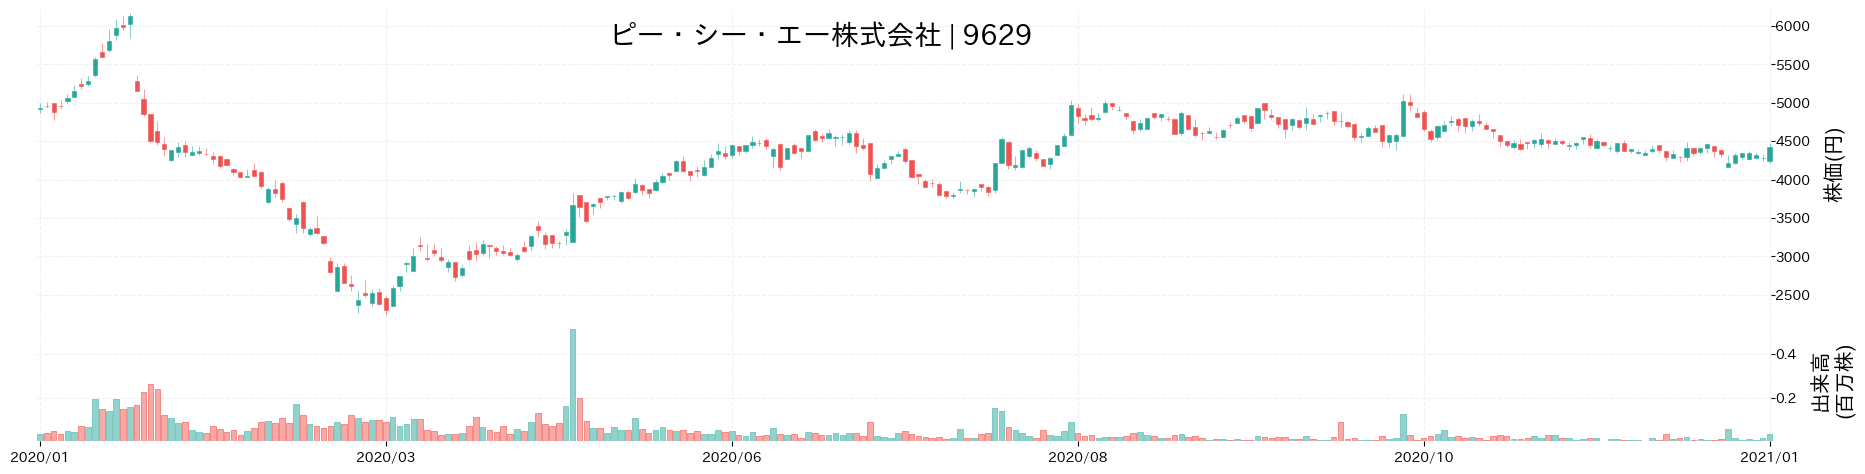 ピー・シー・エーの株価推移(2020)